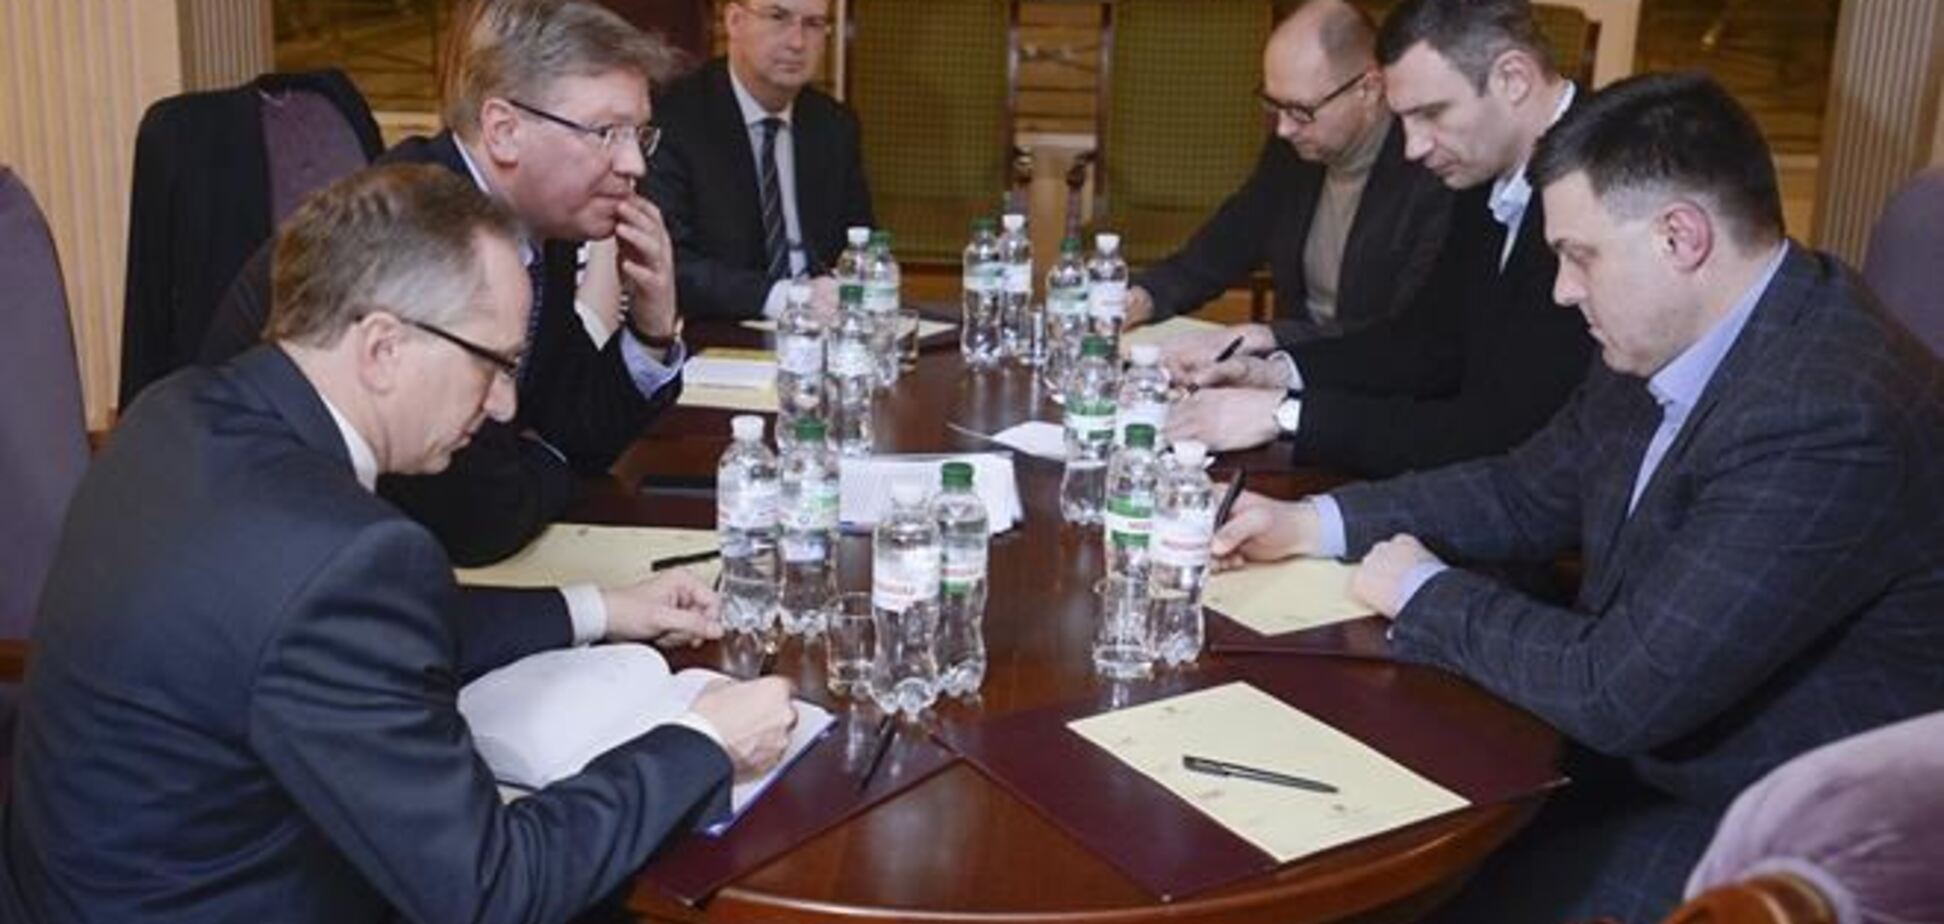 Яценюк: готовность ЕС помочь Украине зависит от решений Януковича